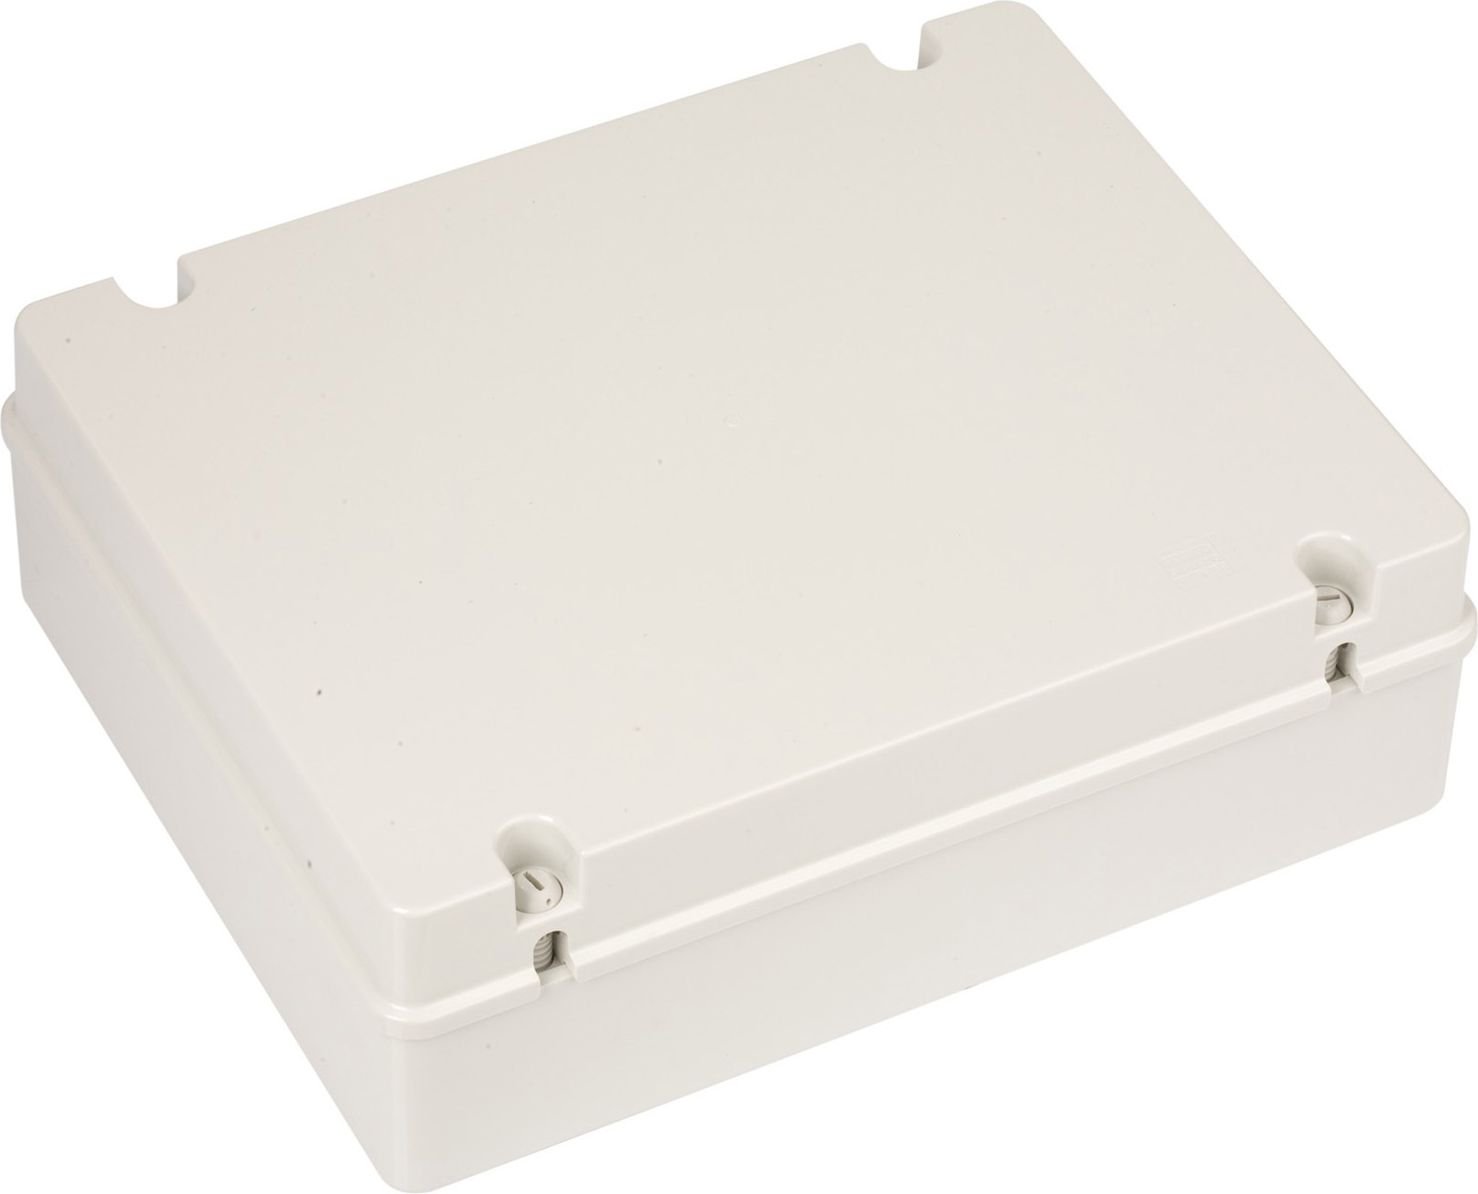 Gewiss Box n/t 380 x 300 x 120 plastic IP56 gri (GW44210)